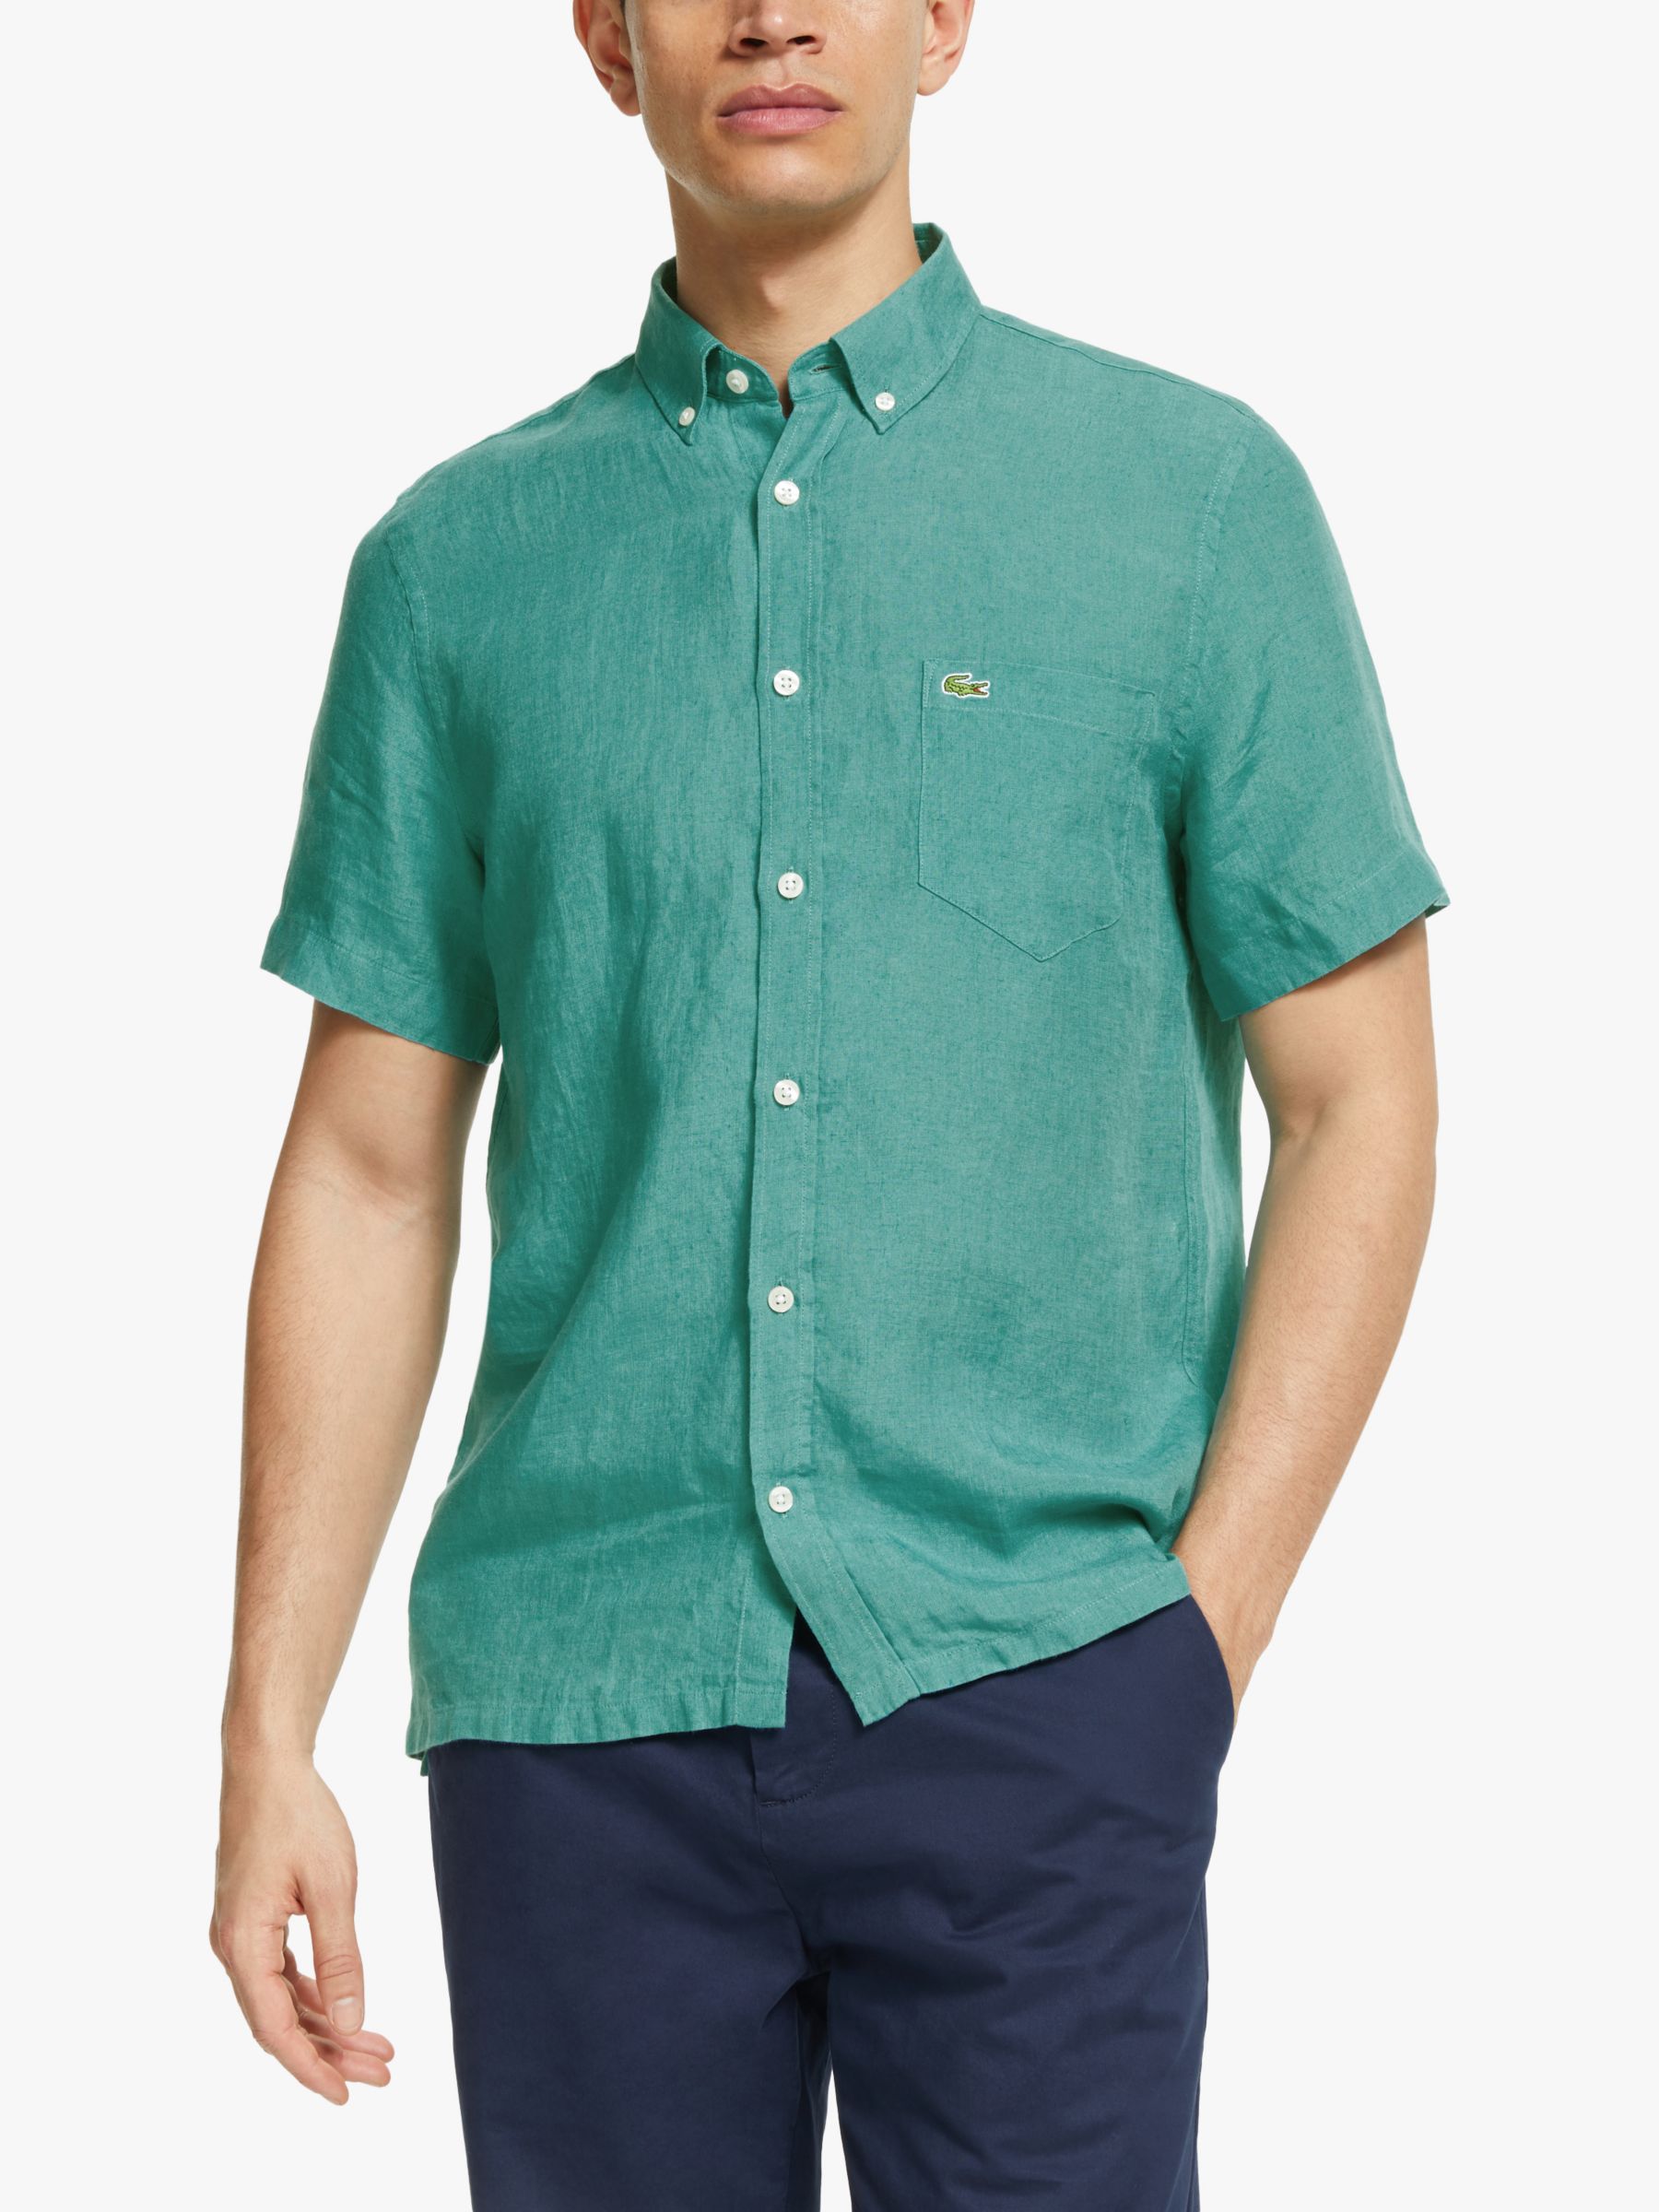 Lacoste Short Sleeve Linen Shirt, Niagara Blue, S